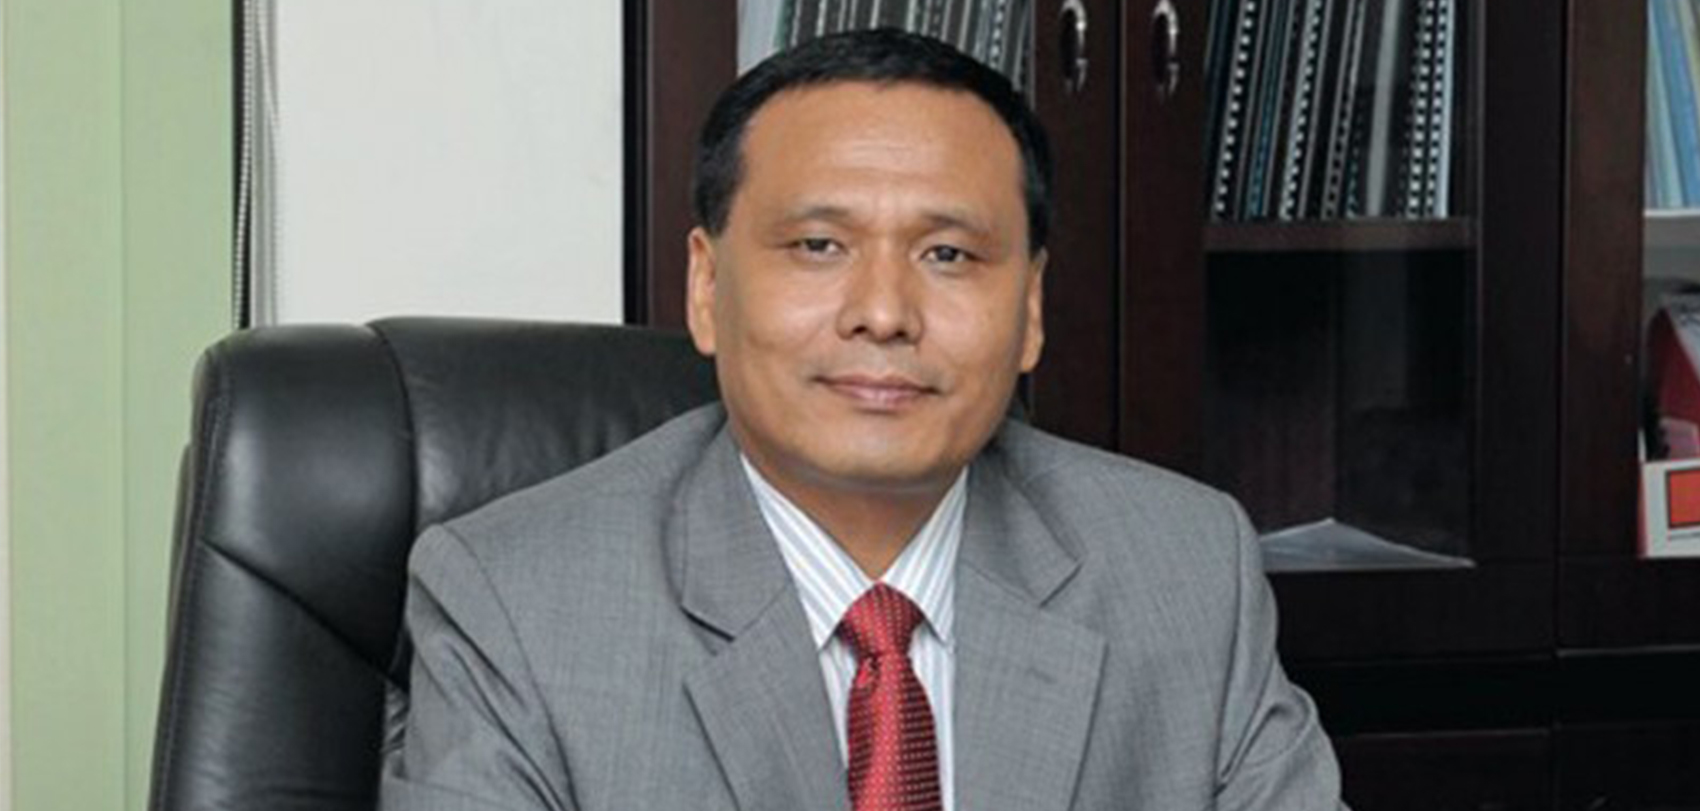 जलविद्युतमा नेपाल सन् २०२६ सम्म आत्मनिर्भर बन्छ’: कार्यकारी निर्देशक कुलमान